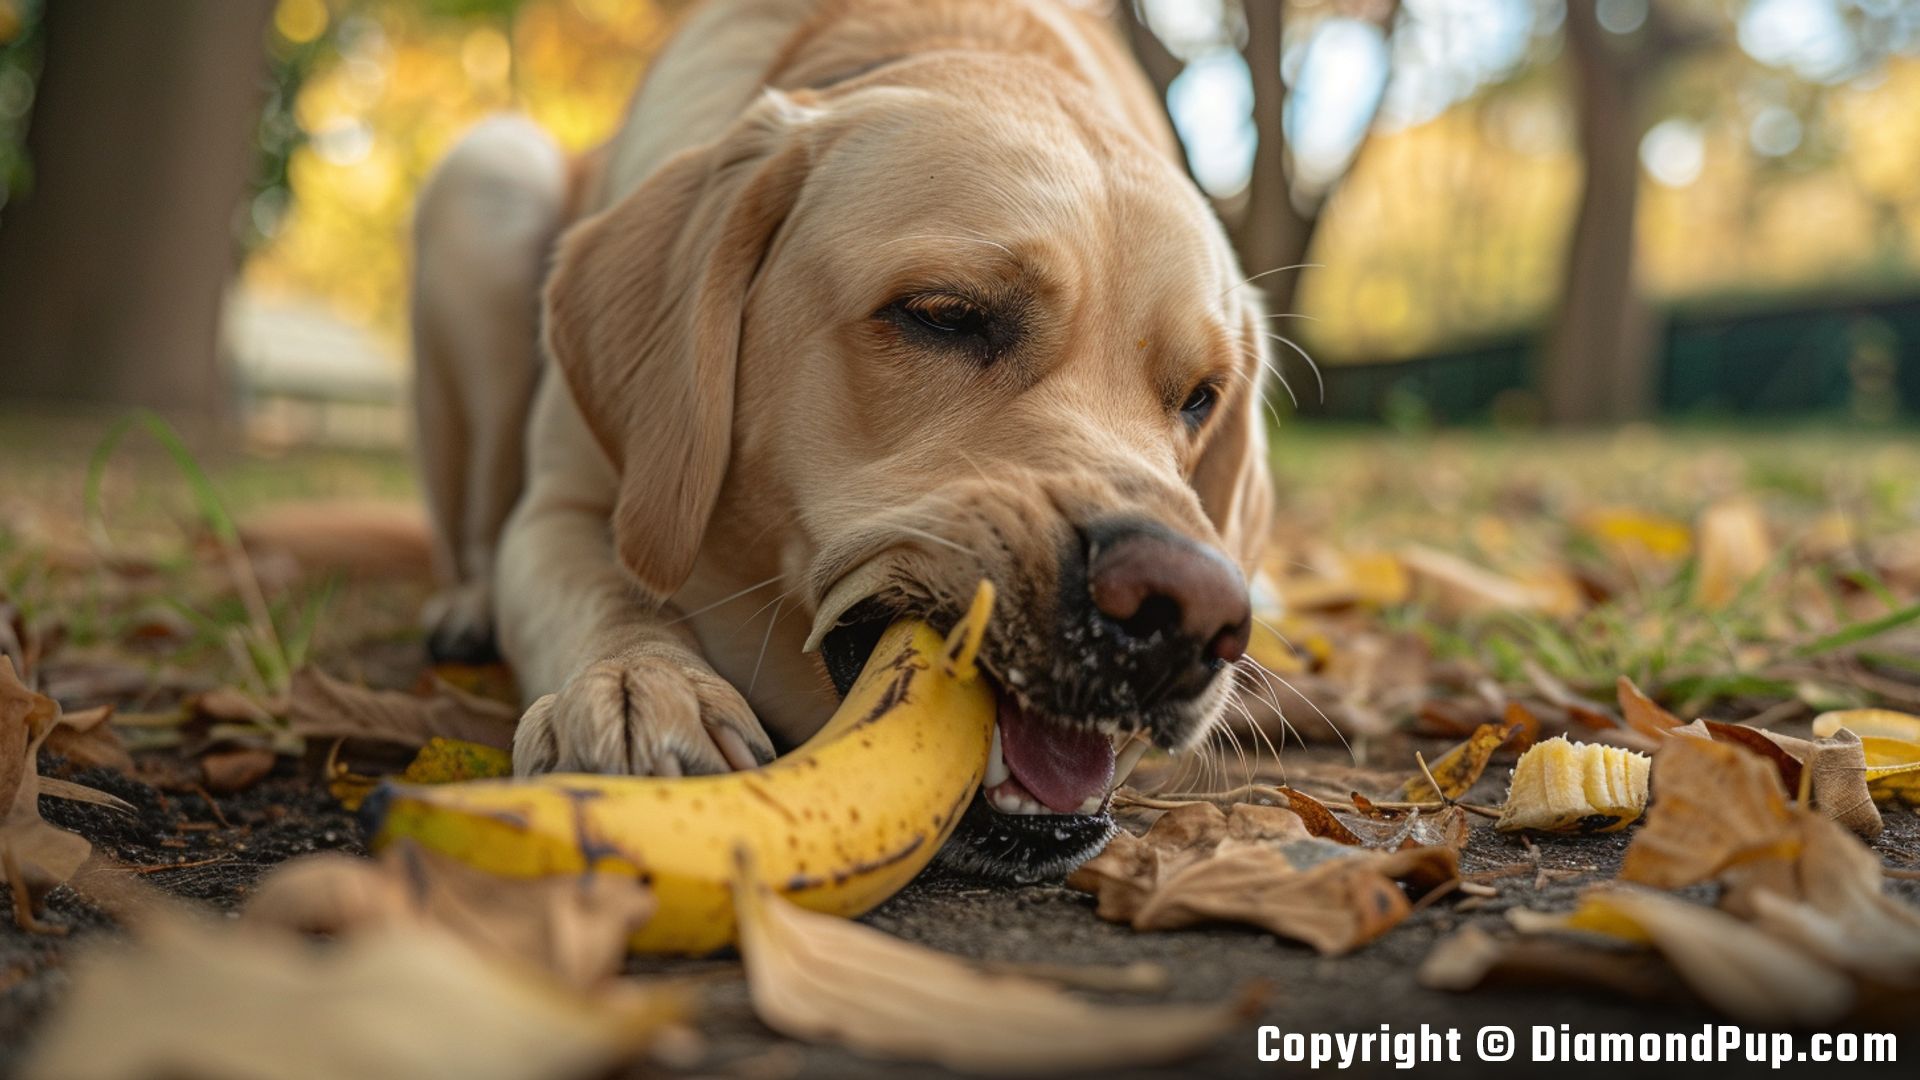 Photograph of an Adorable Labrador Eating Banana